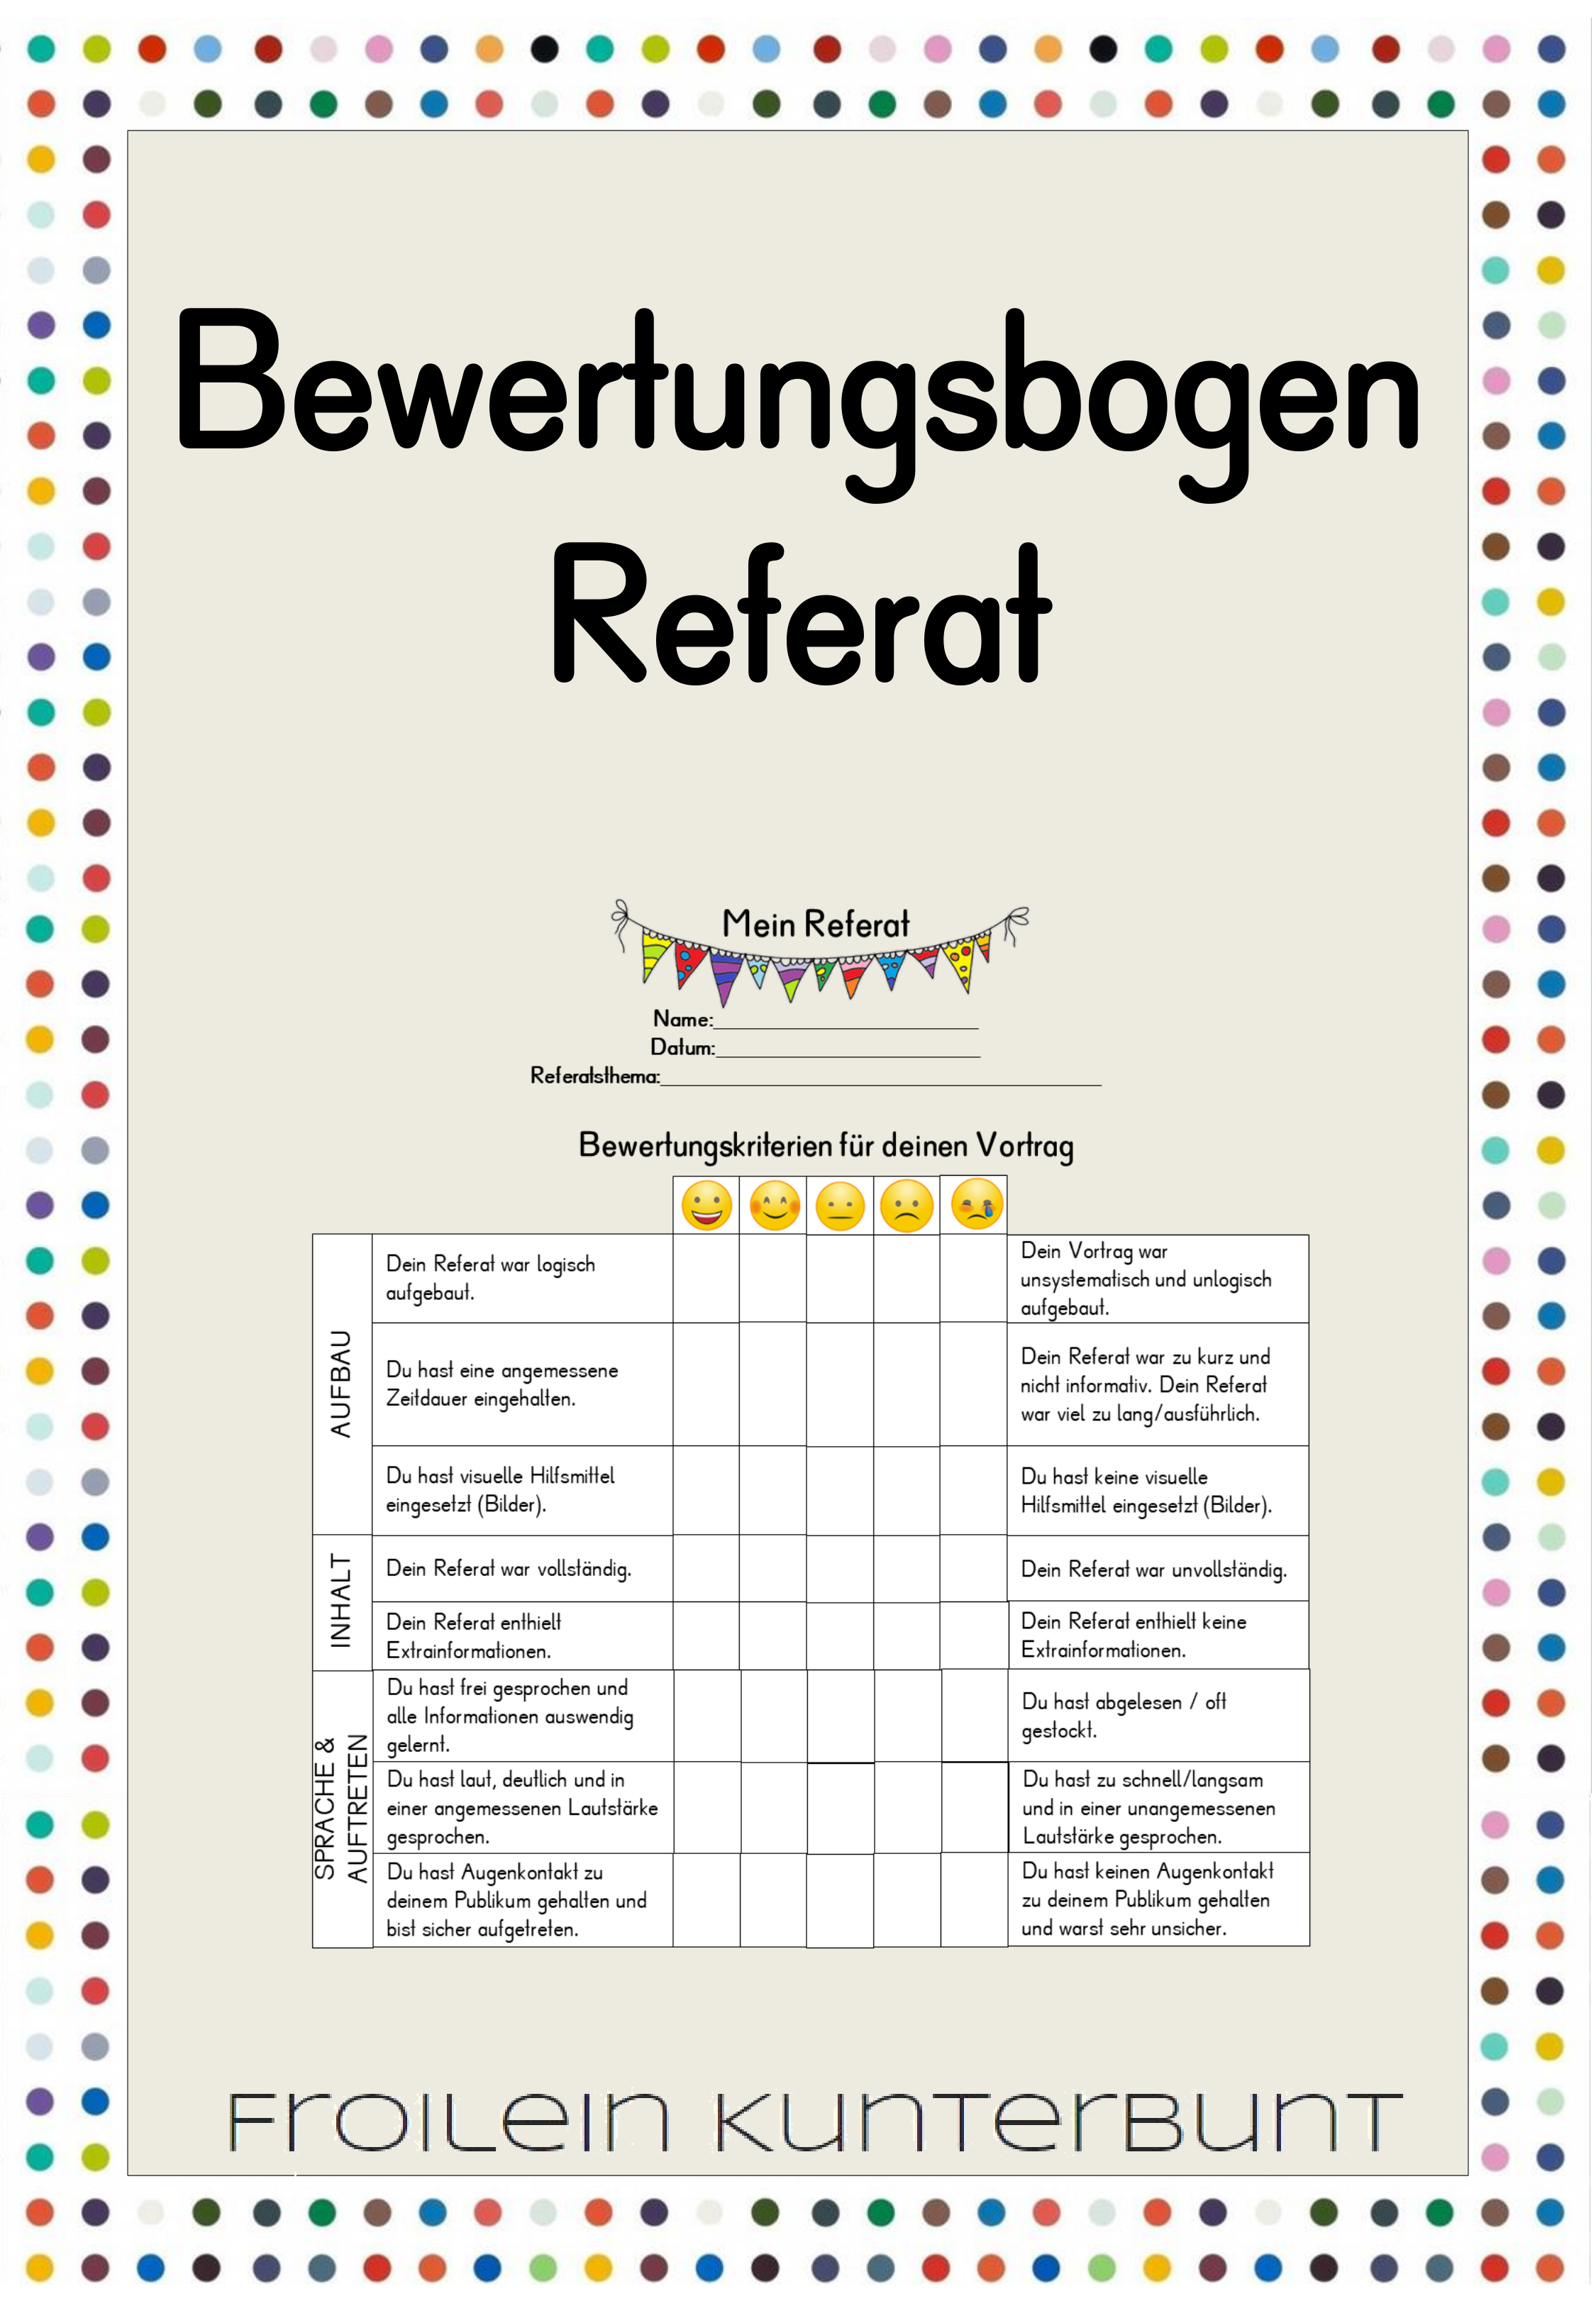 Bewertungsbogen Referat Deutsch Lehreralltag Lehrmaterial Unterrichtsmaterial Unterricht Schule